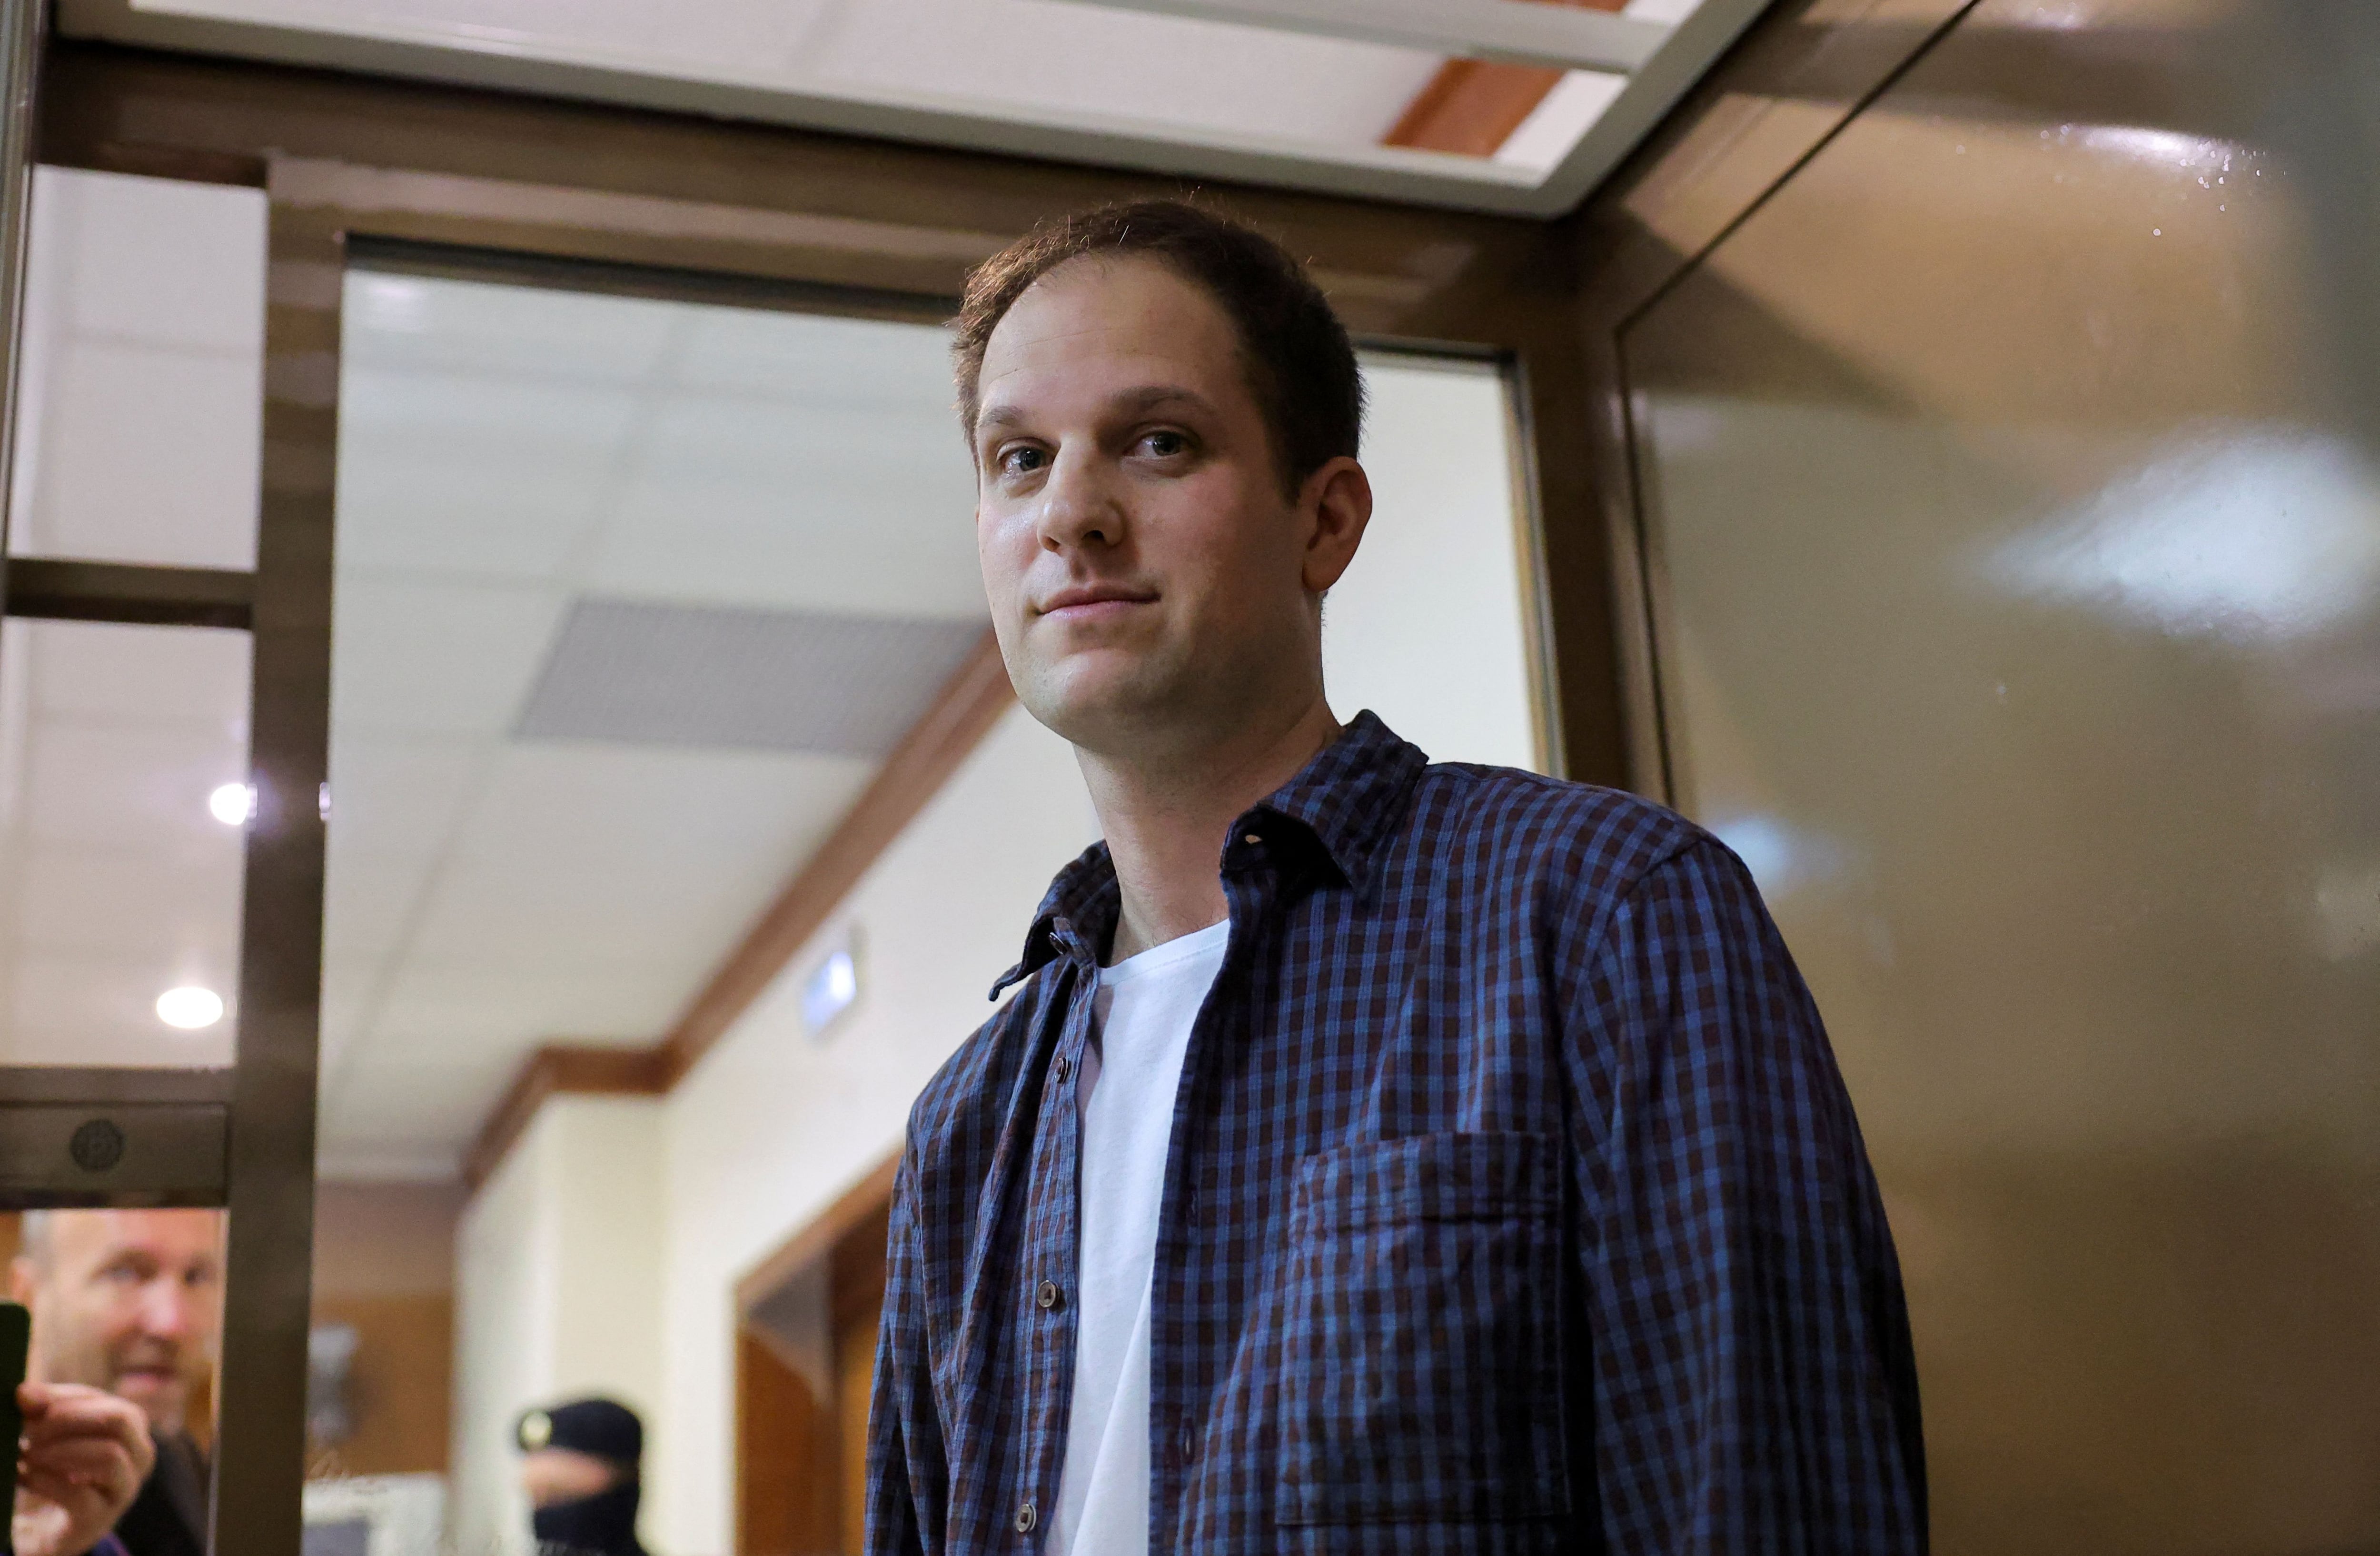 Rusia rechazó la apelación del otro periodista estadounidense detenido por espionaje, Evan Gershkovich. (REUTERS/Evgenia Novozhenina)